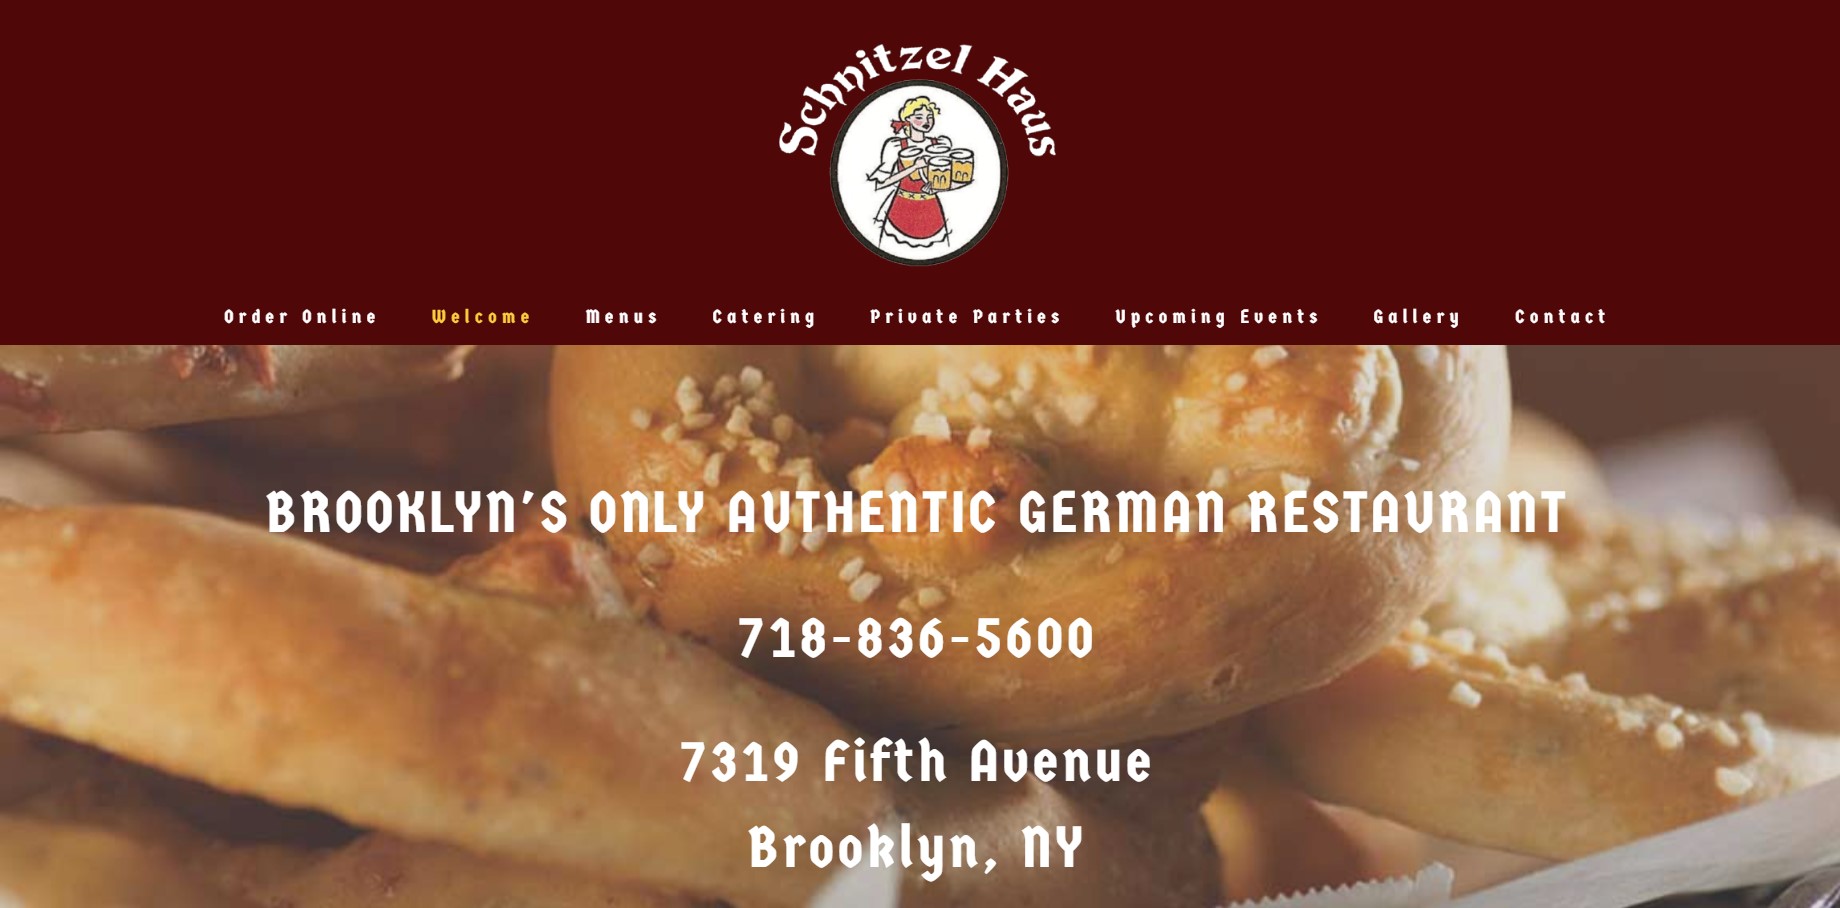 schnitzel haus german restaurant in new york